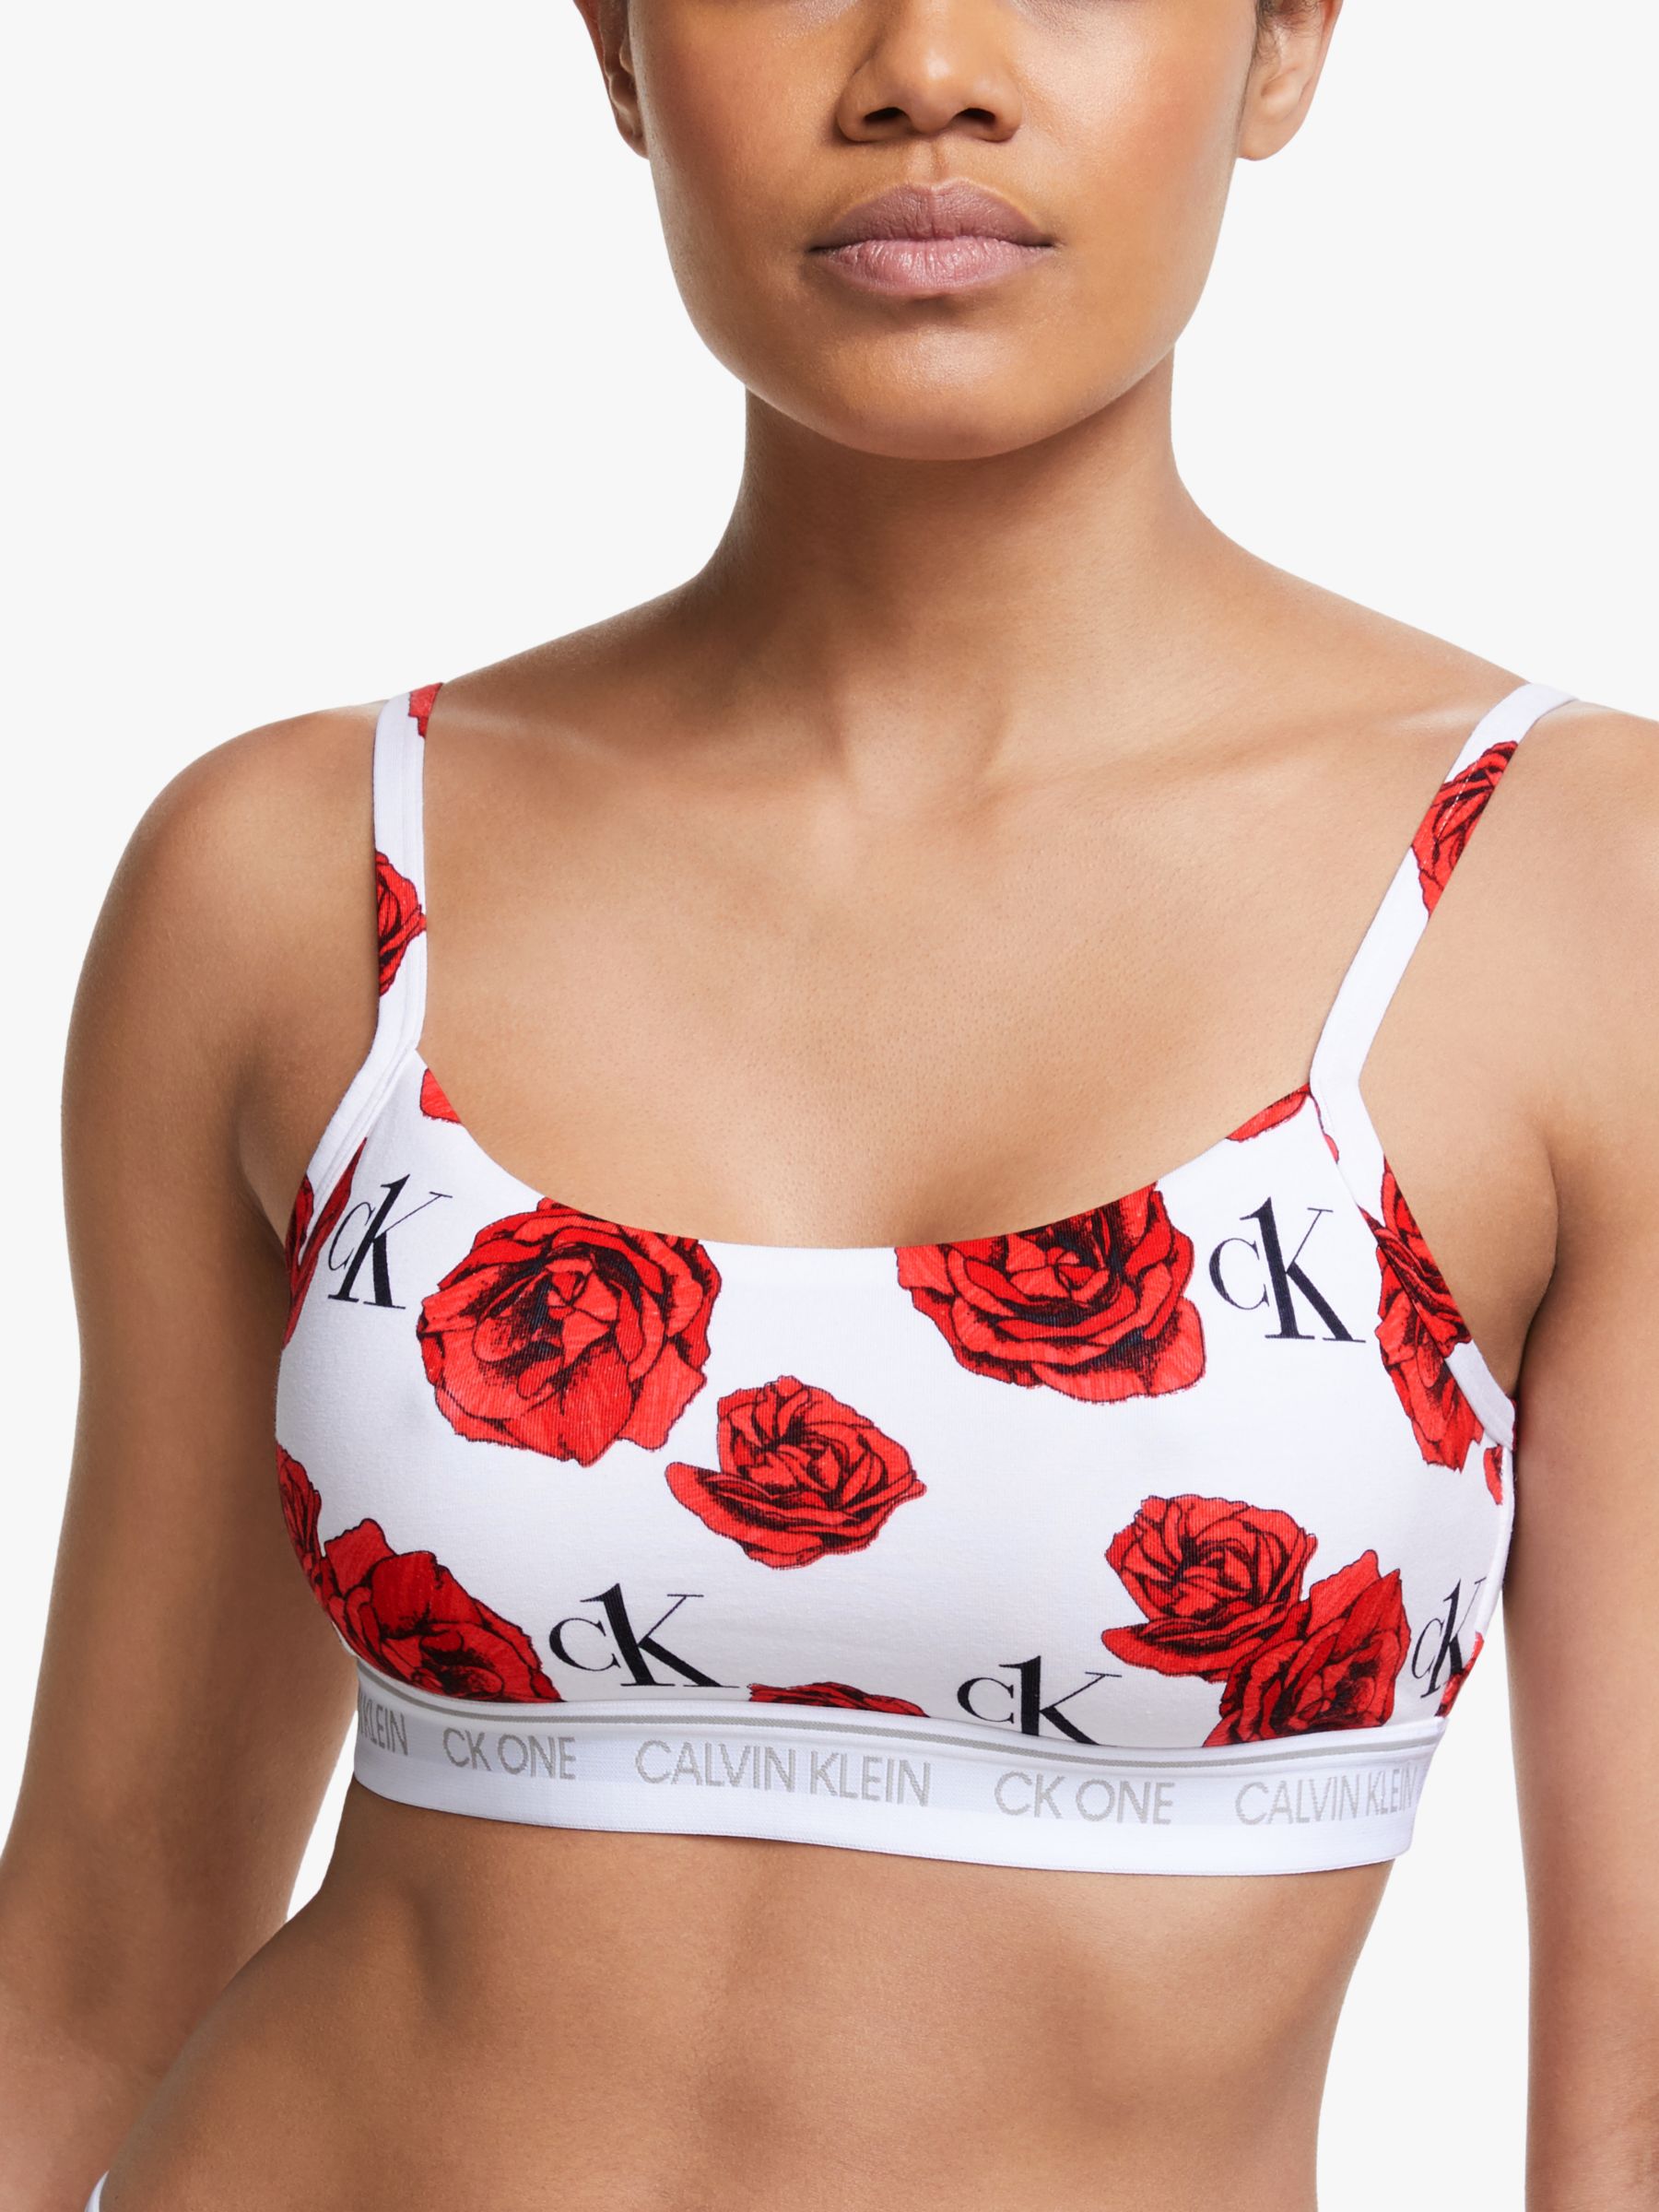 Introducir 61+ imagen calvin klein rose underwear